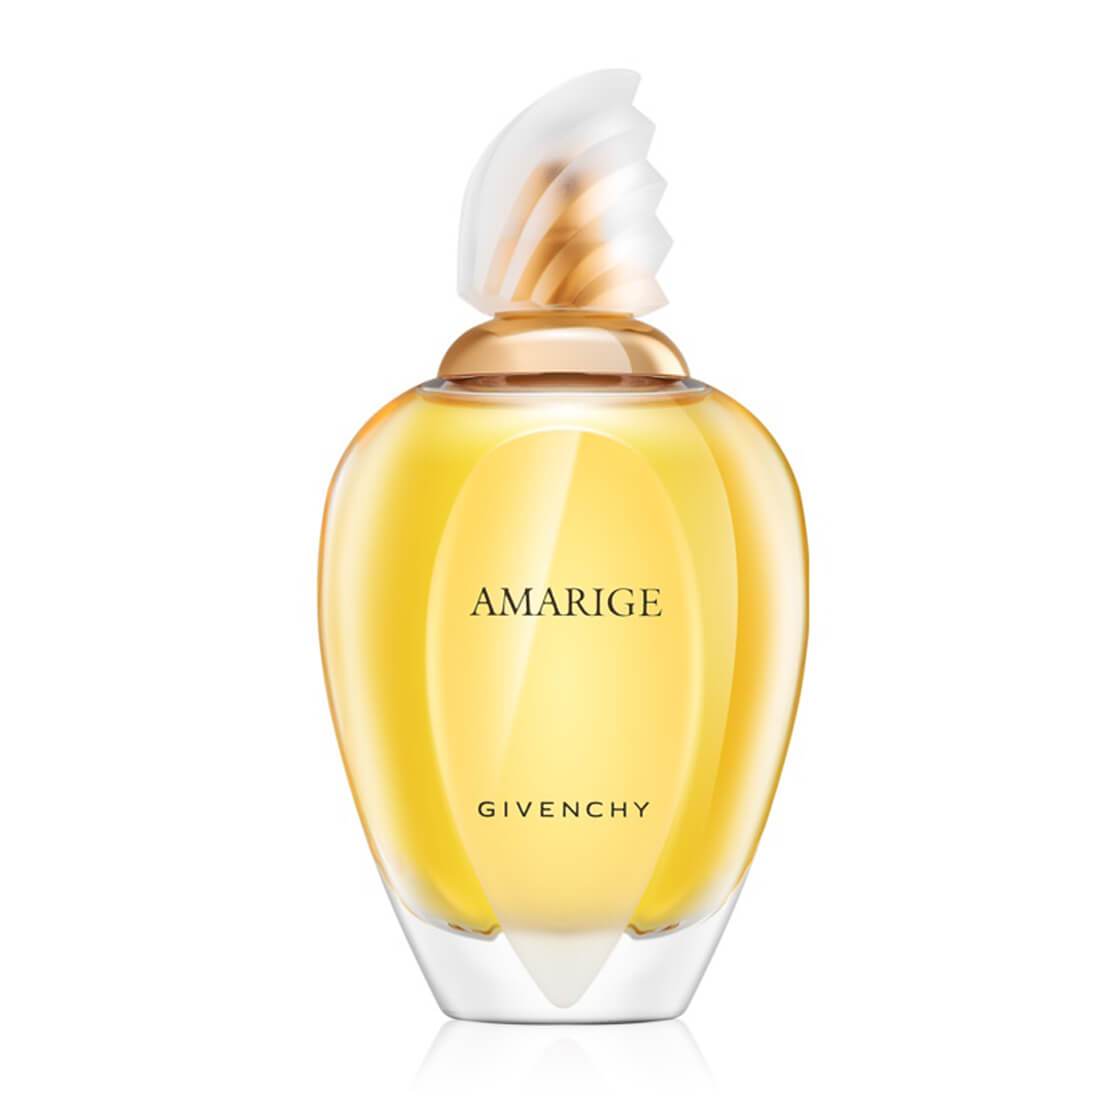 Givenchy Amarige EDT Perfume - 100ml